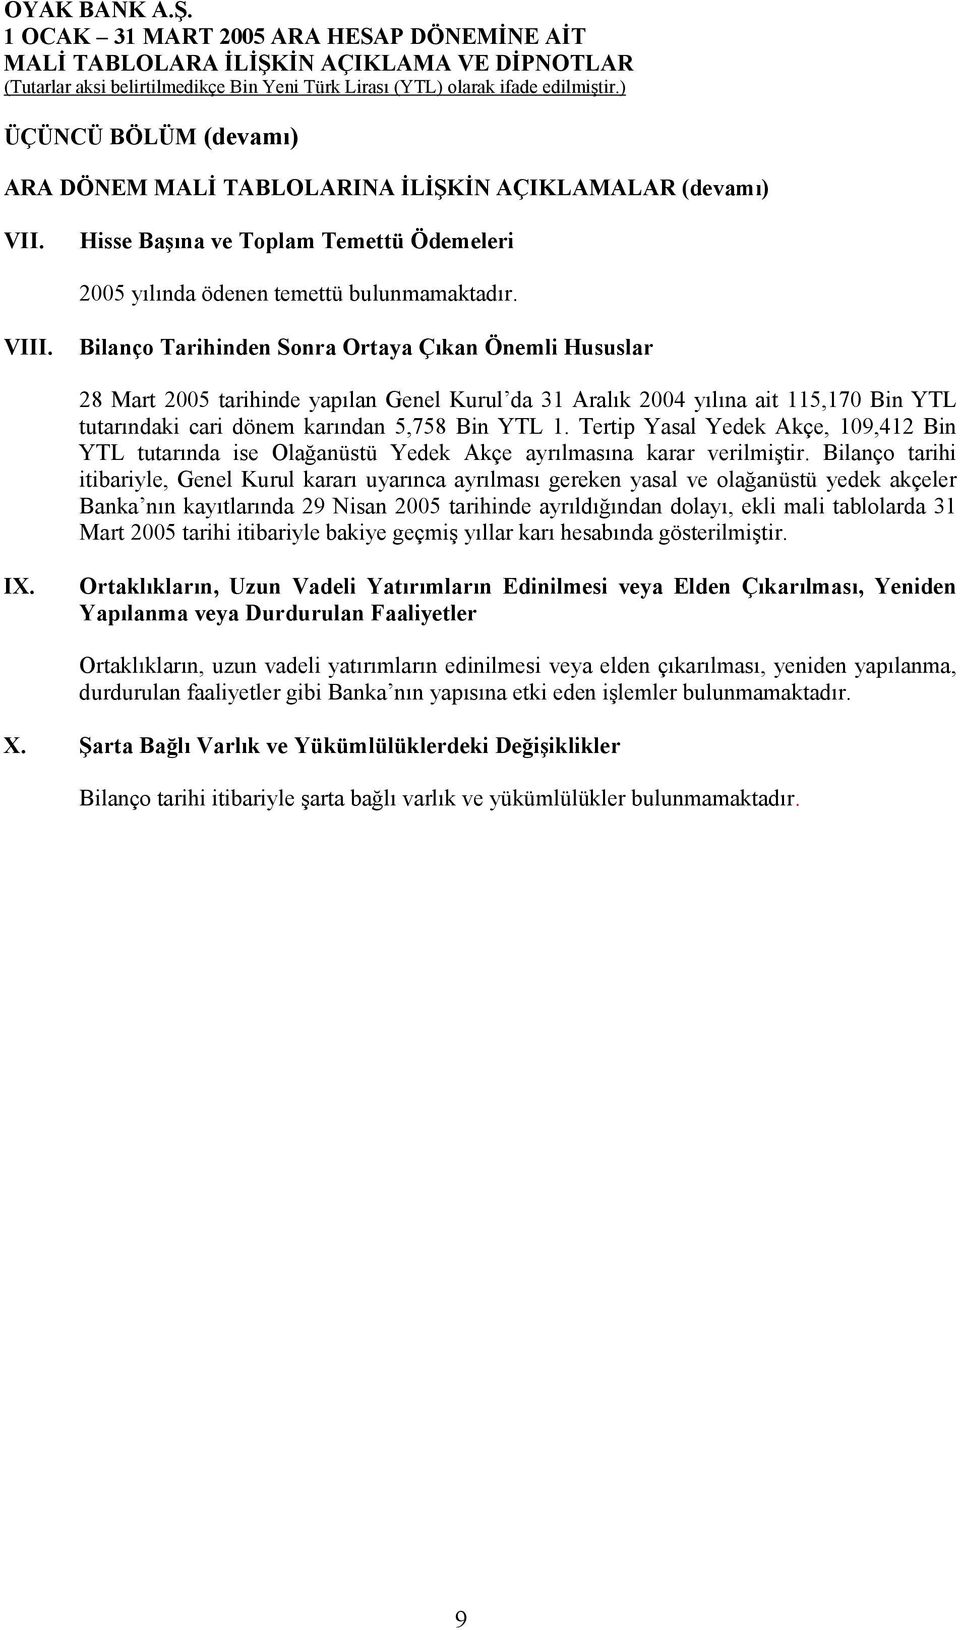 Tertip Yasal Yedek Akçe, 109,412 Bin YTL tutarõnda ise Olağanüstü Yedek Akçe ayrõlmasõna karar verilmiştir.